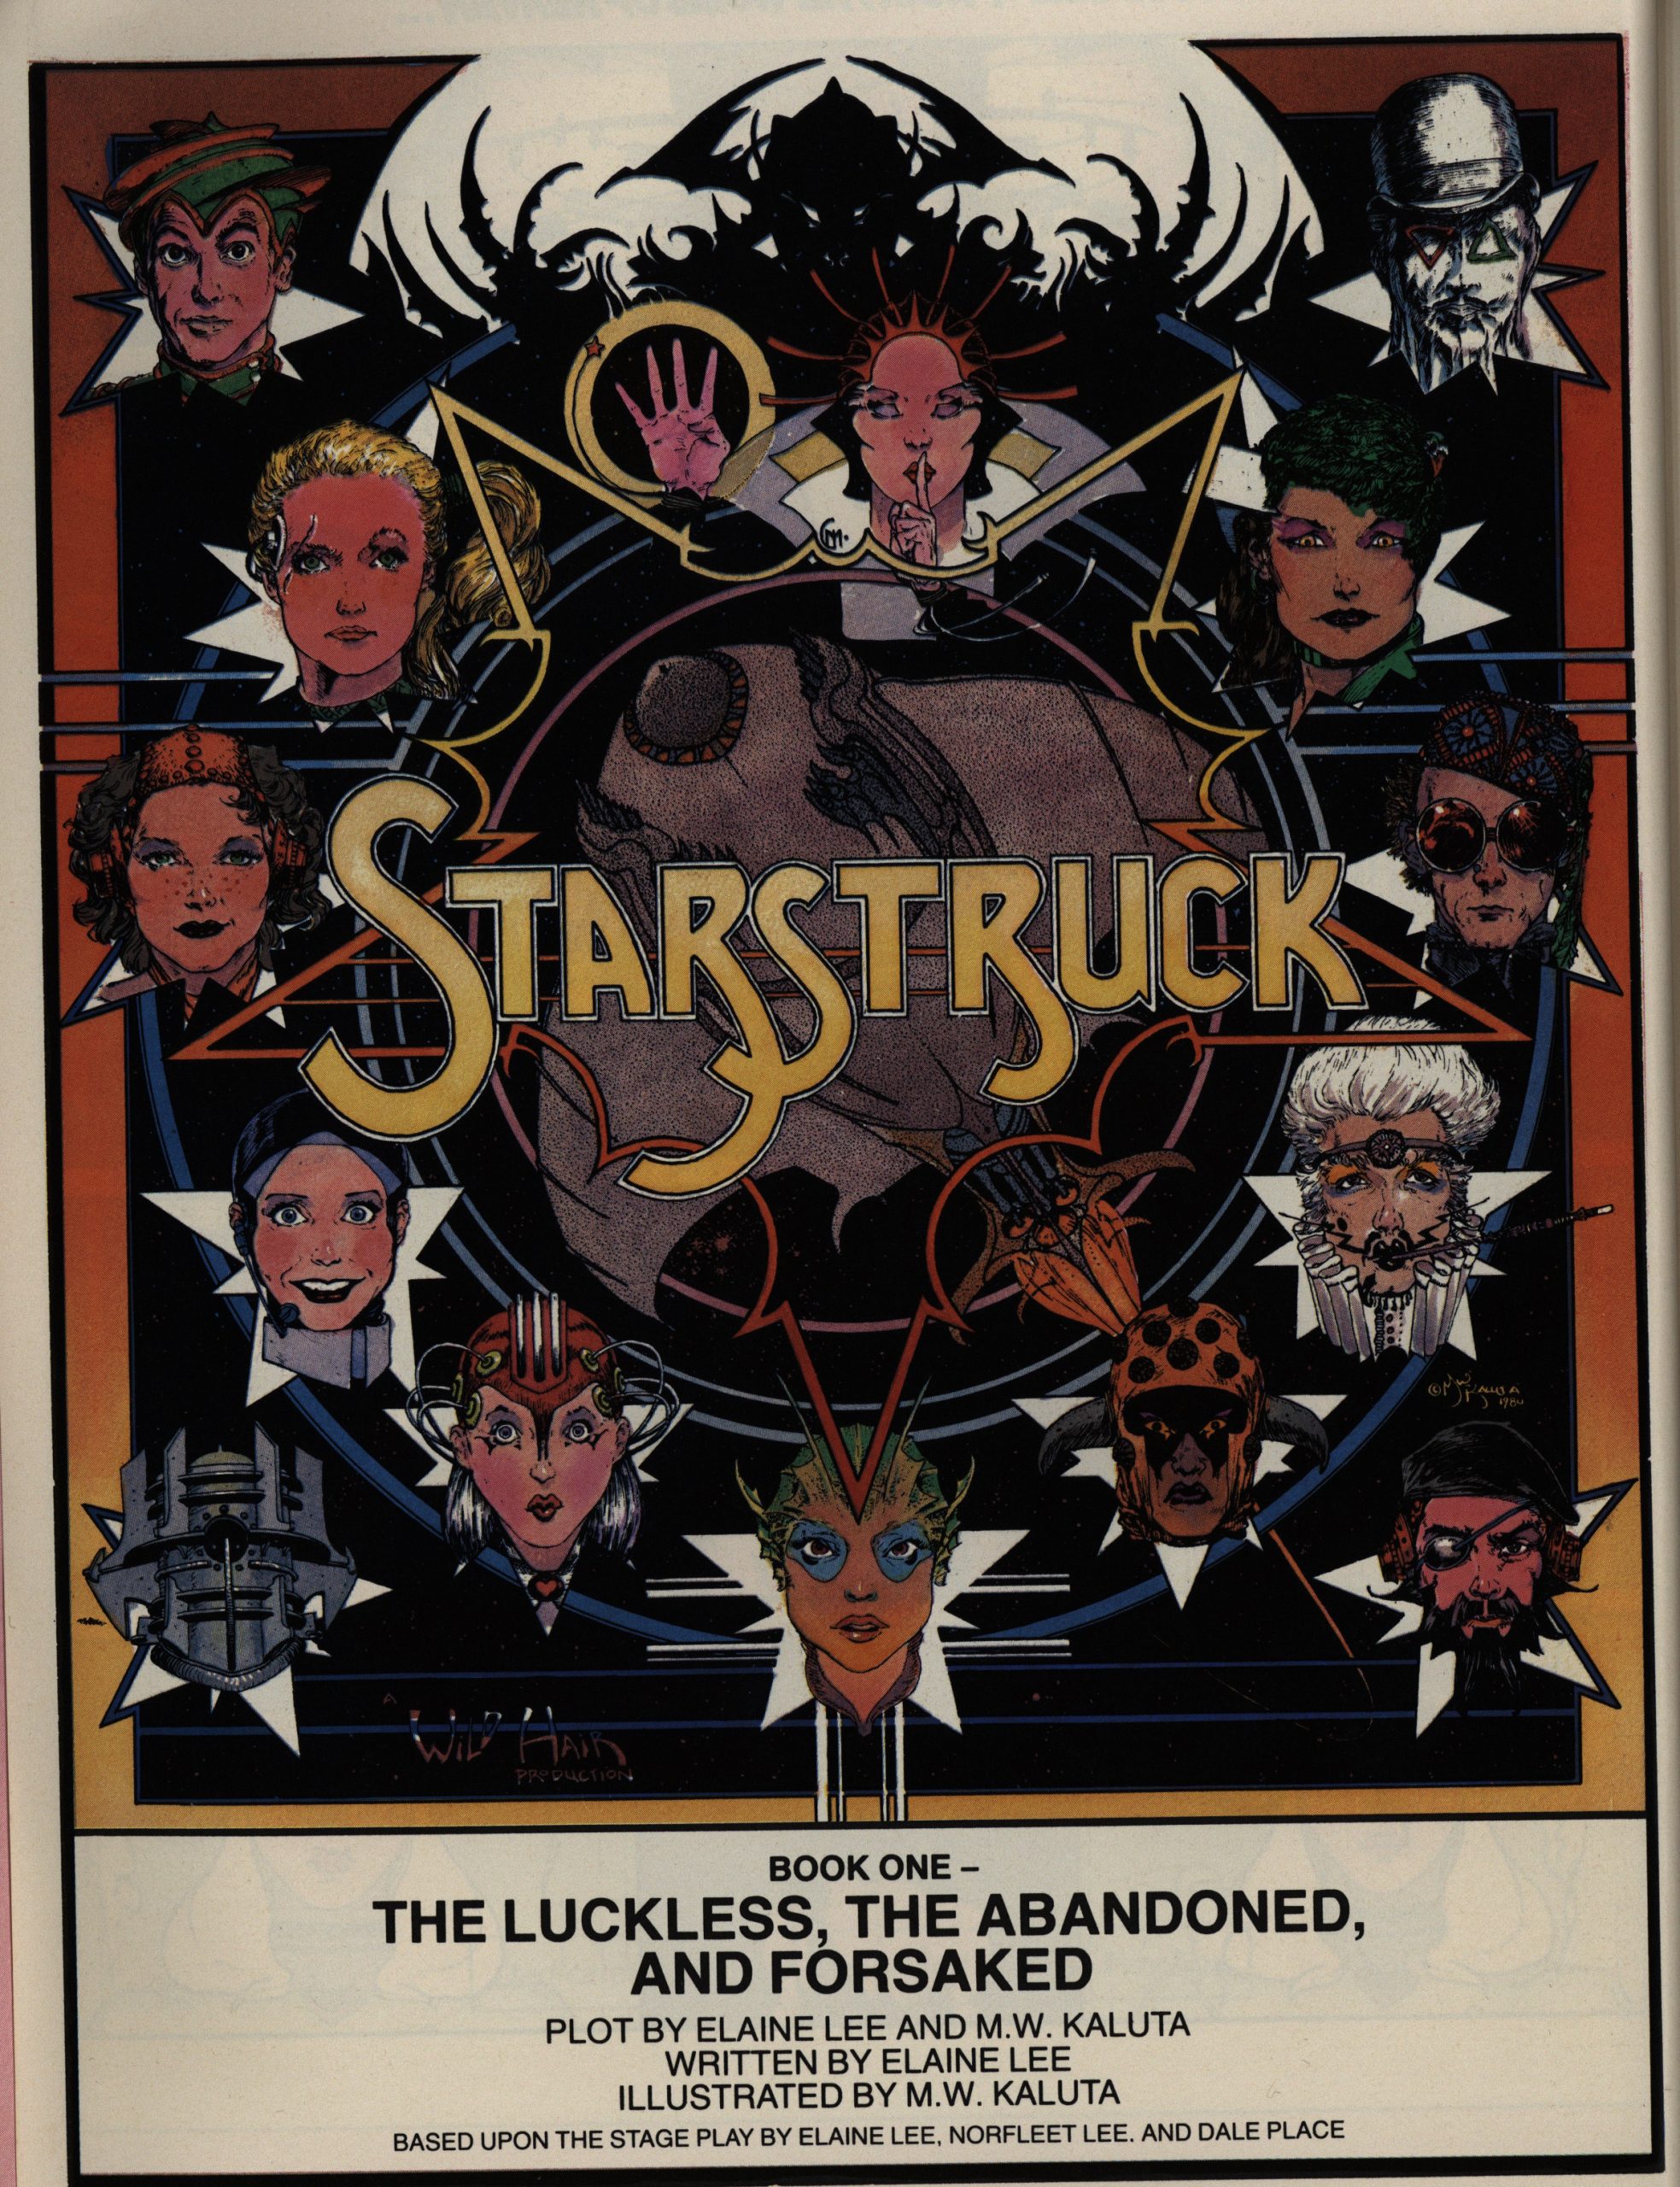 1985: Starstruck – TOTALLY EPIC